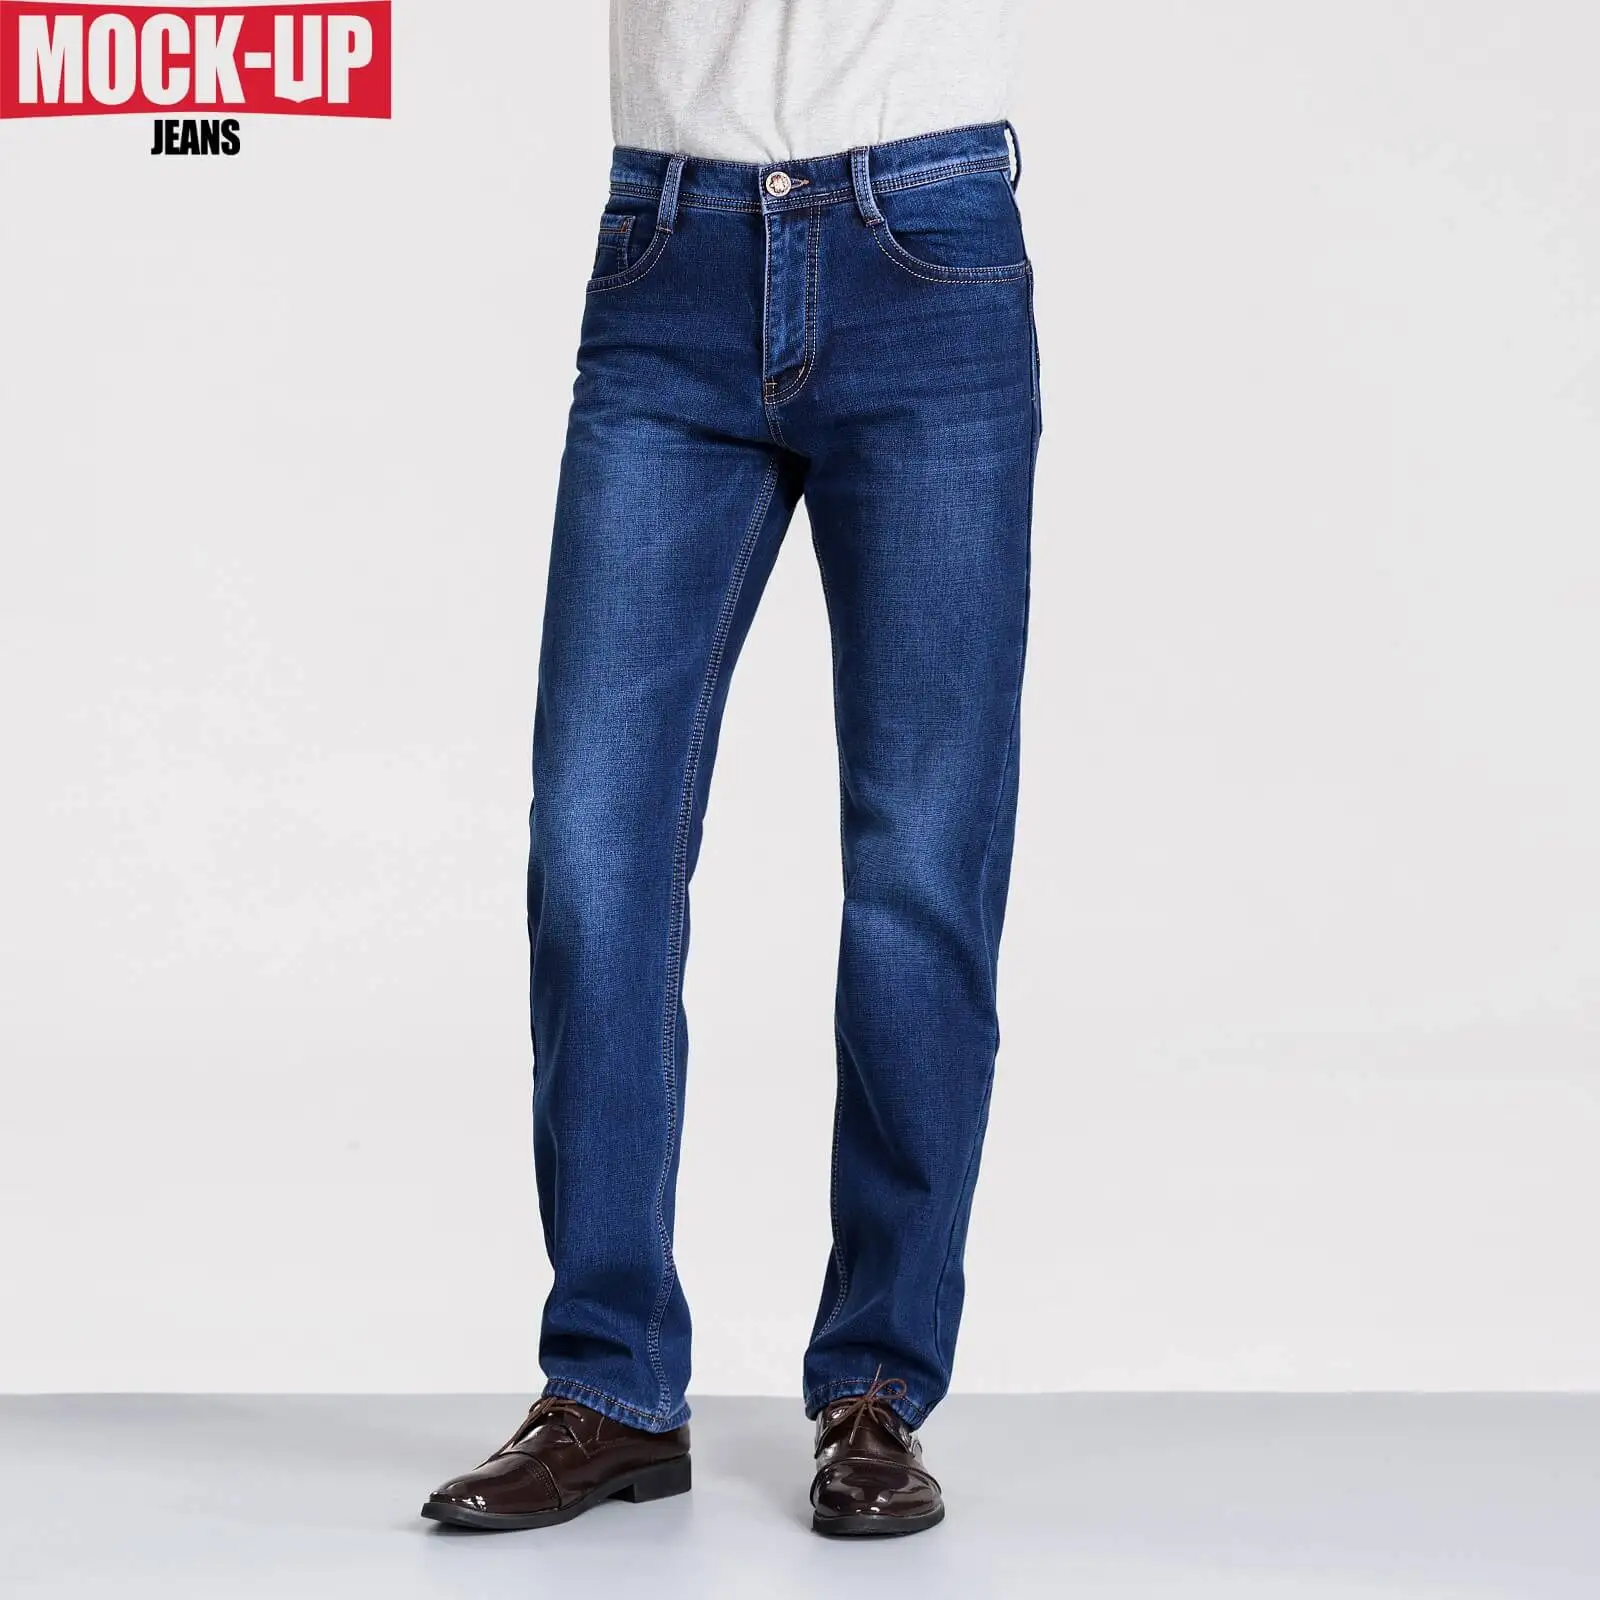 Mock Up бренд MPF803 зимние меховые теплые мужские джинсы Homme Брюки Dsq джинсы в стиле хип-хоп облегающие деловые джинсы обычный крой S Европейский 38 размер